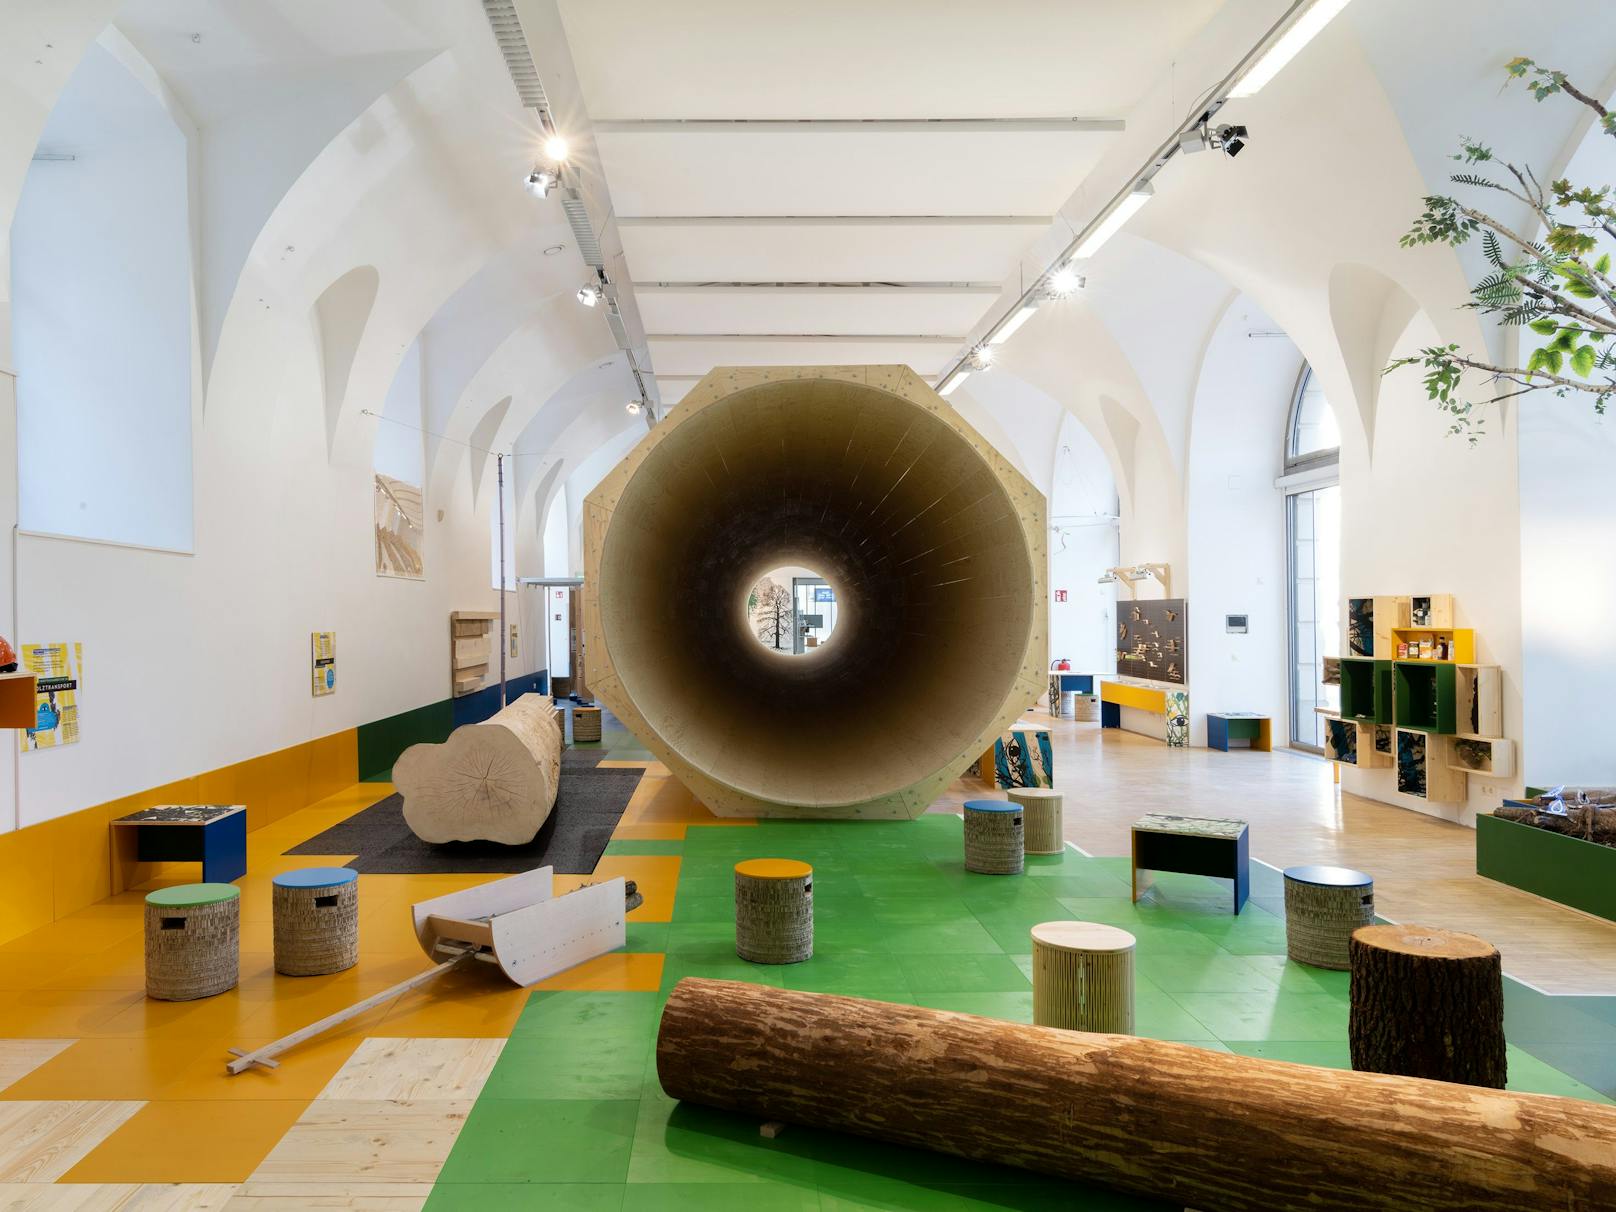 Die Mitmachausstellung "Alles Holz" im Zoom Kindermuseum (Neubau) wird bis Ende Februar 2022 verlängert.Highlight ist ein 30 Meter langer, begehbarer Baumstamm.